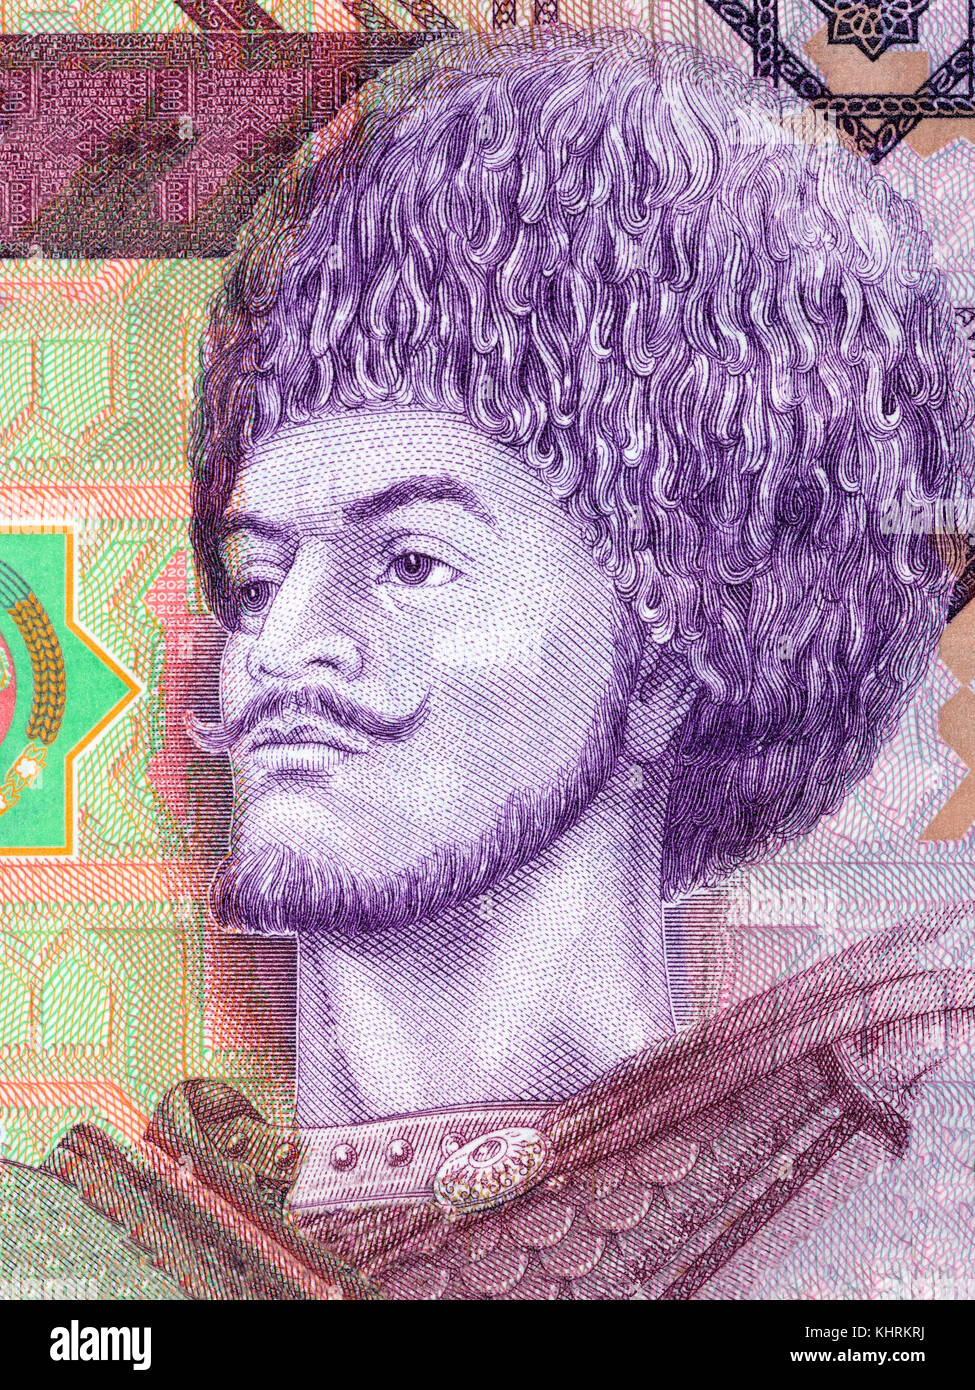 Mendigar gorogly turcomano turcomano retrato del dinero Foto de stock